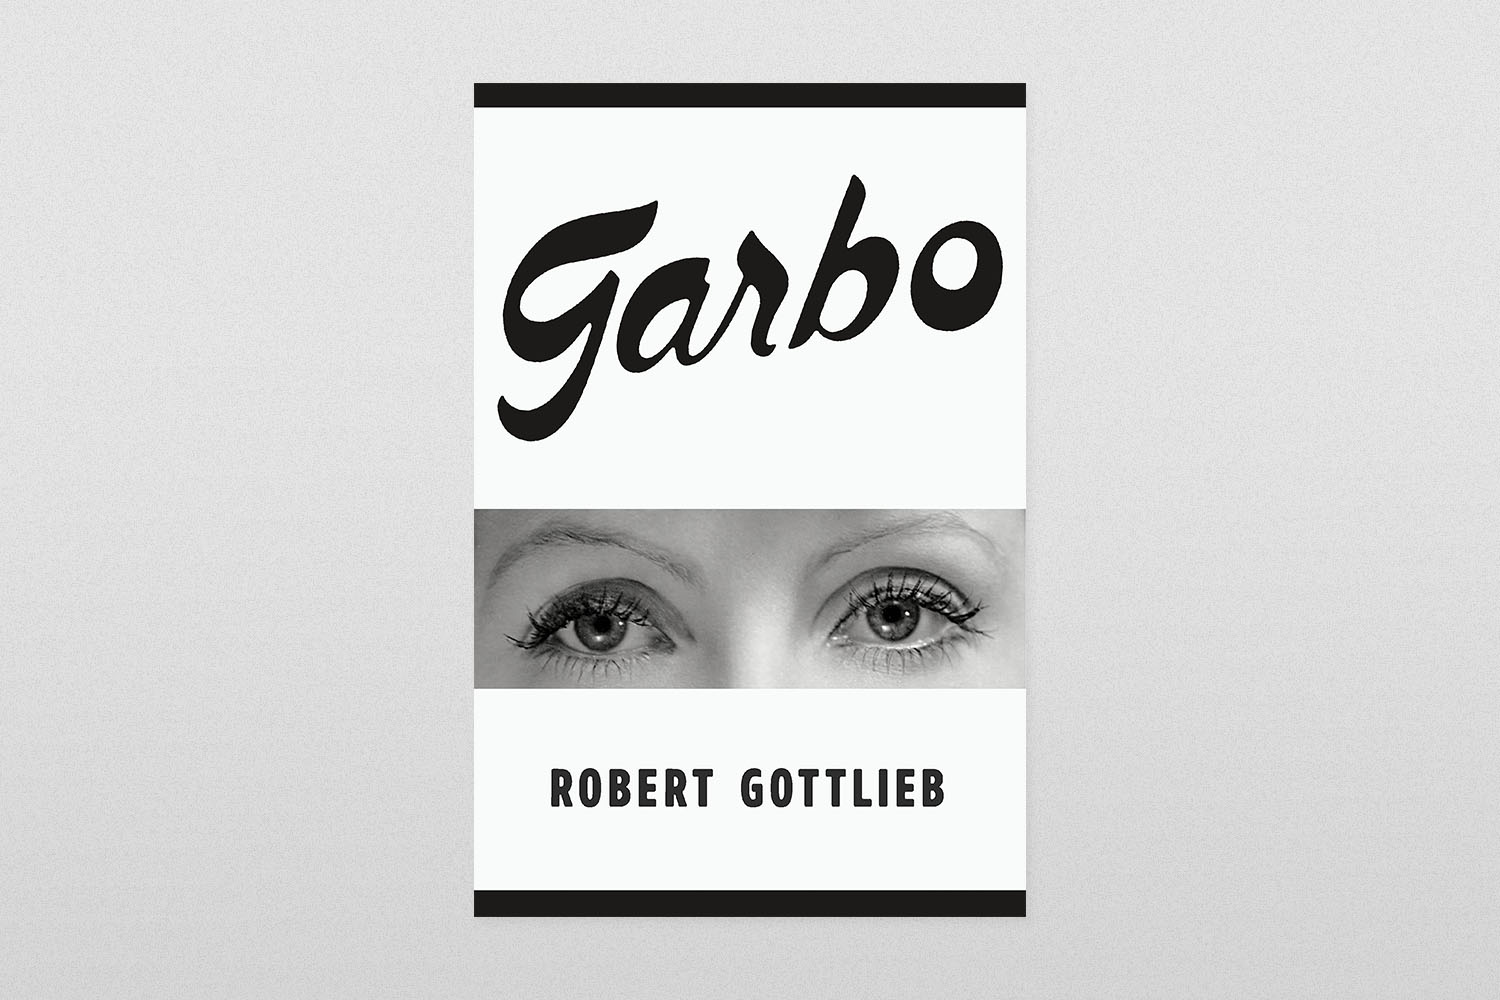 "Garbo"